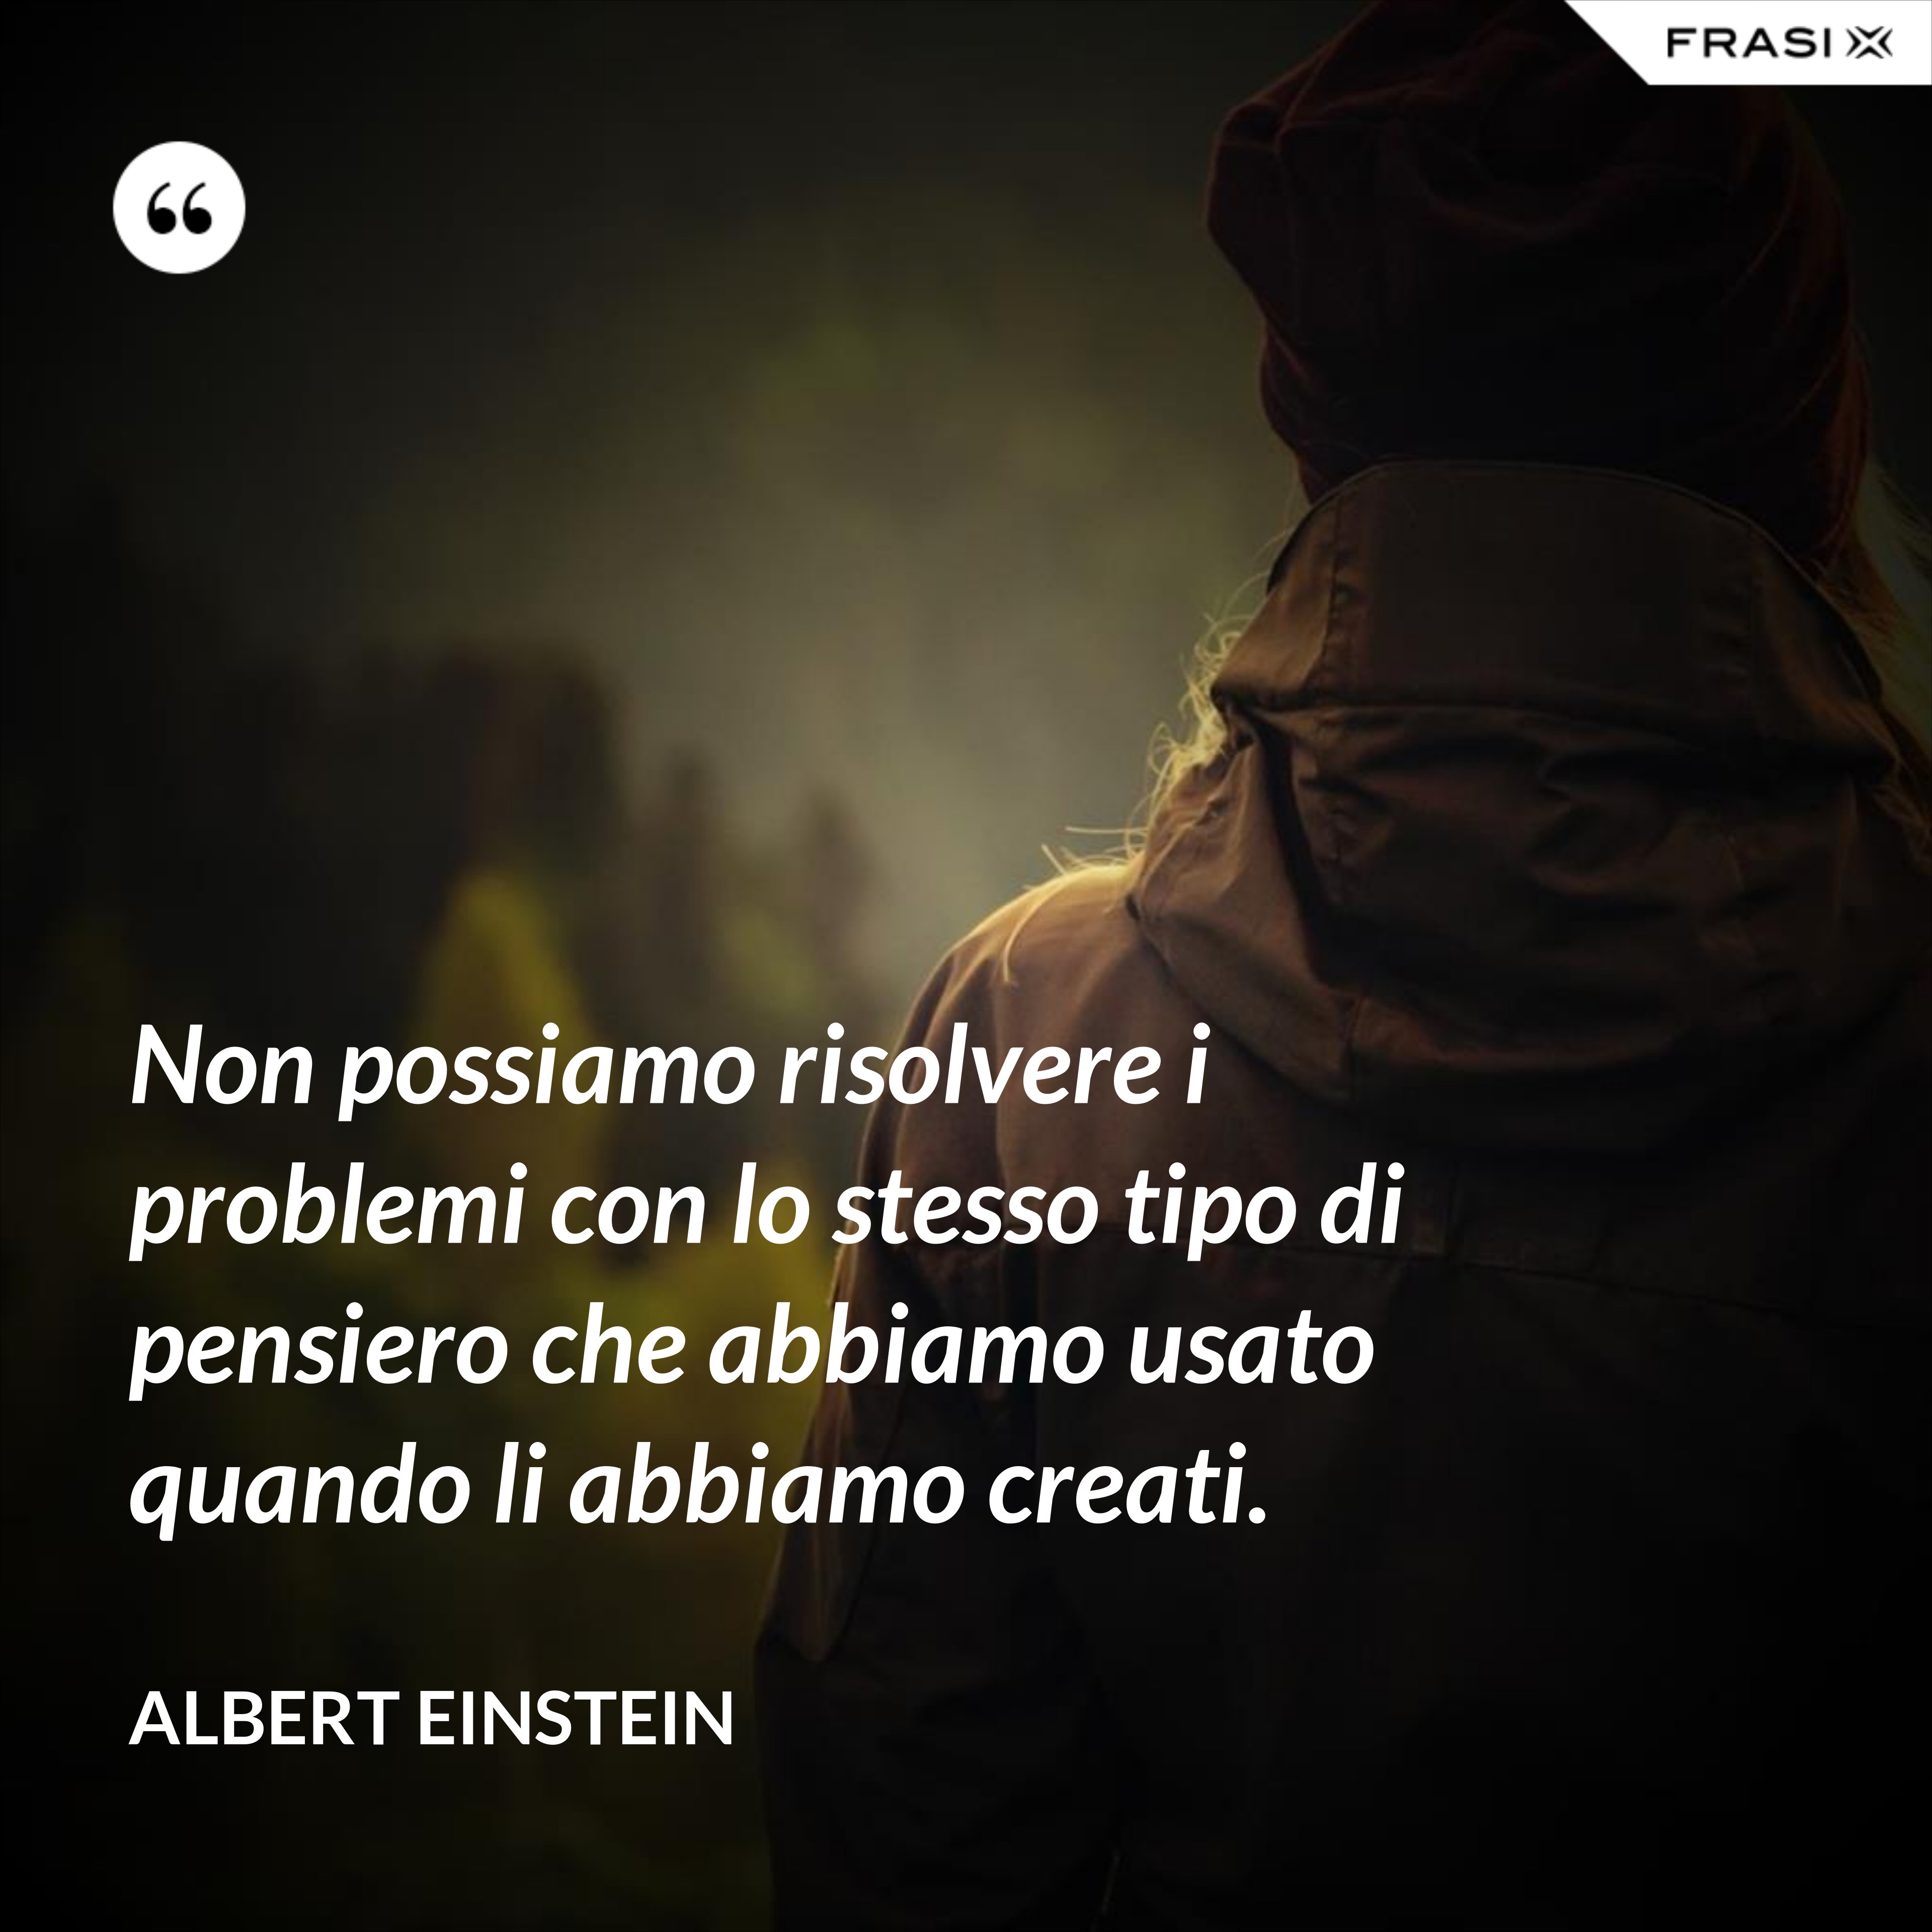 Non possiamo risolvere i problemi con lo stesso tipo di pensiero che abbiamo usato quando li abbiamo creati. - Albert Einstein